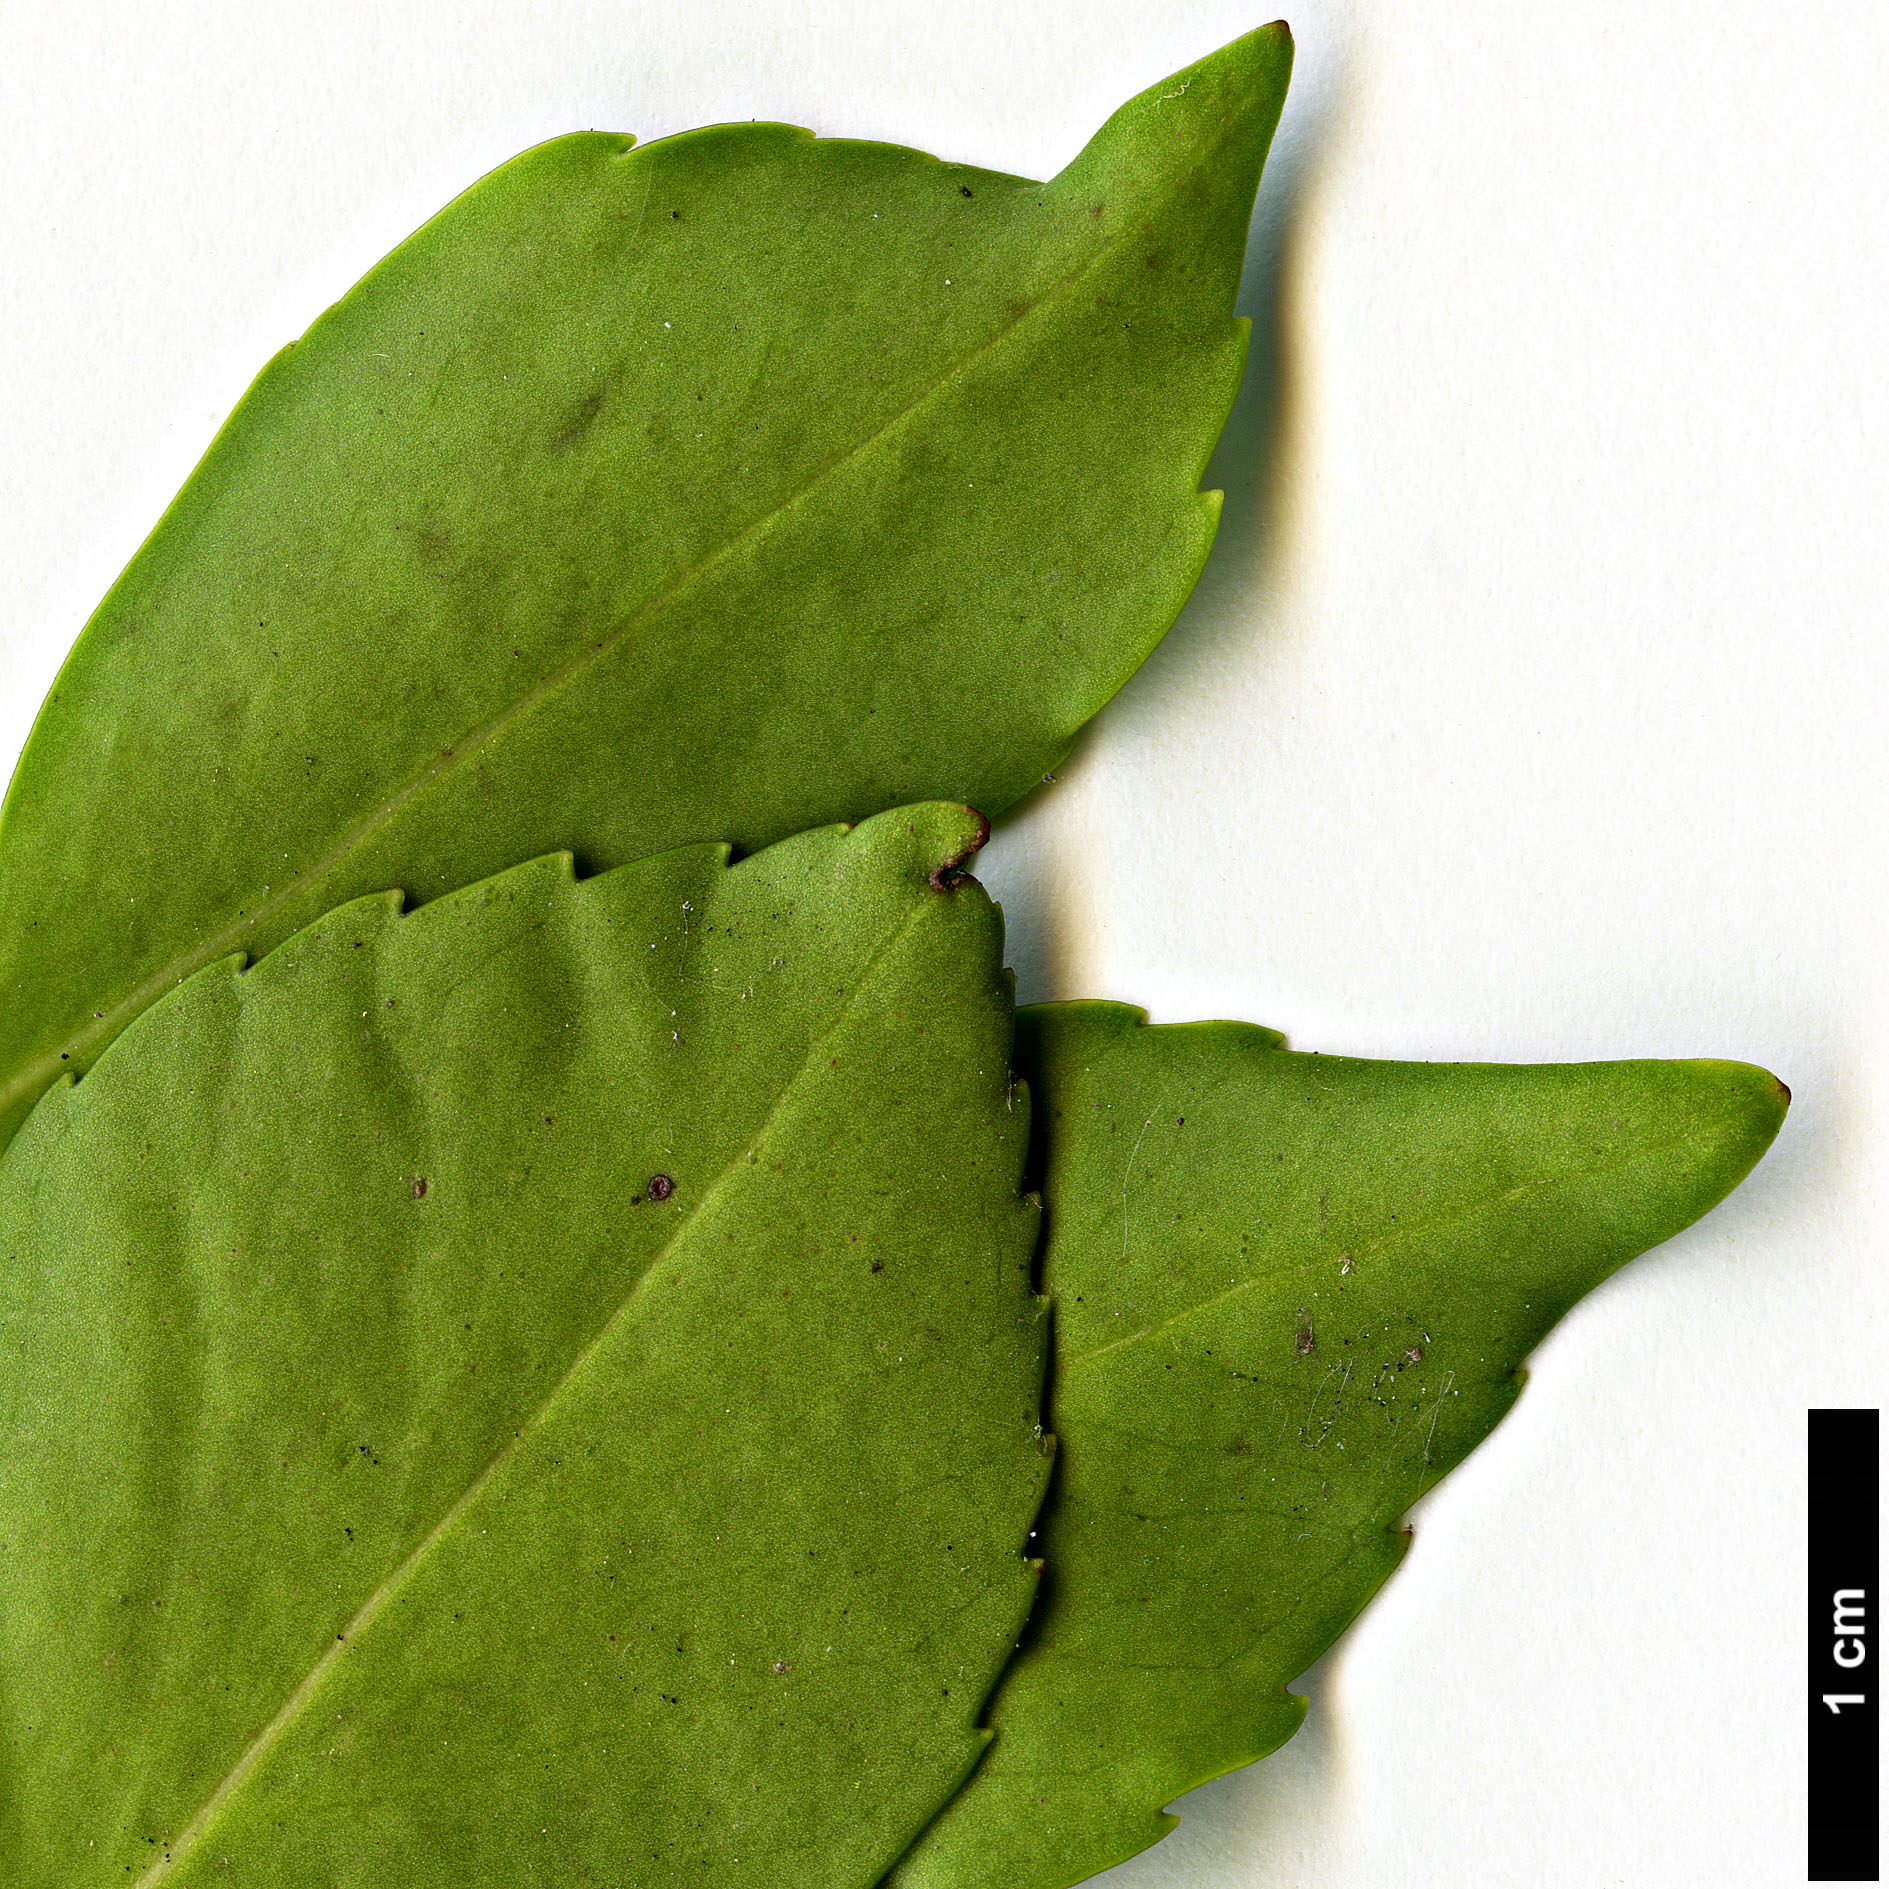 High resolution image: Family: Aquifoliaceae - Genus: Ilex - Taxon: sugerokii - SpeciesSub: subsp. longipedunculata